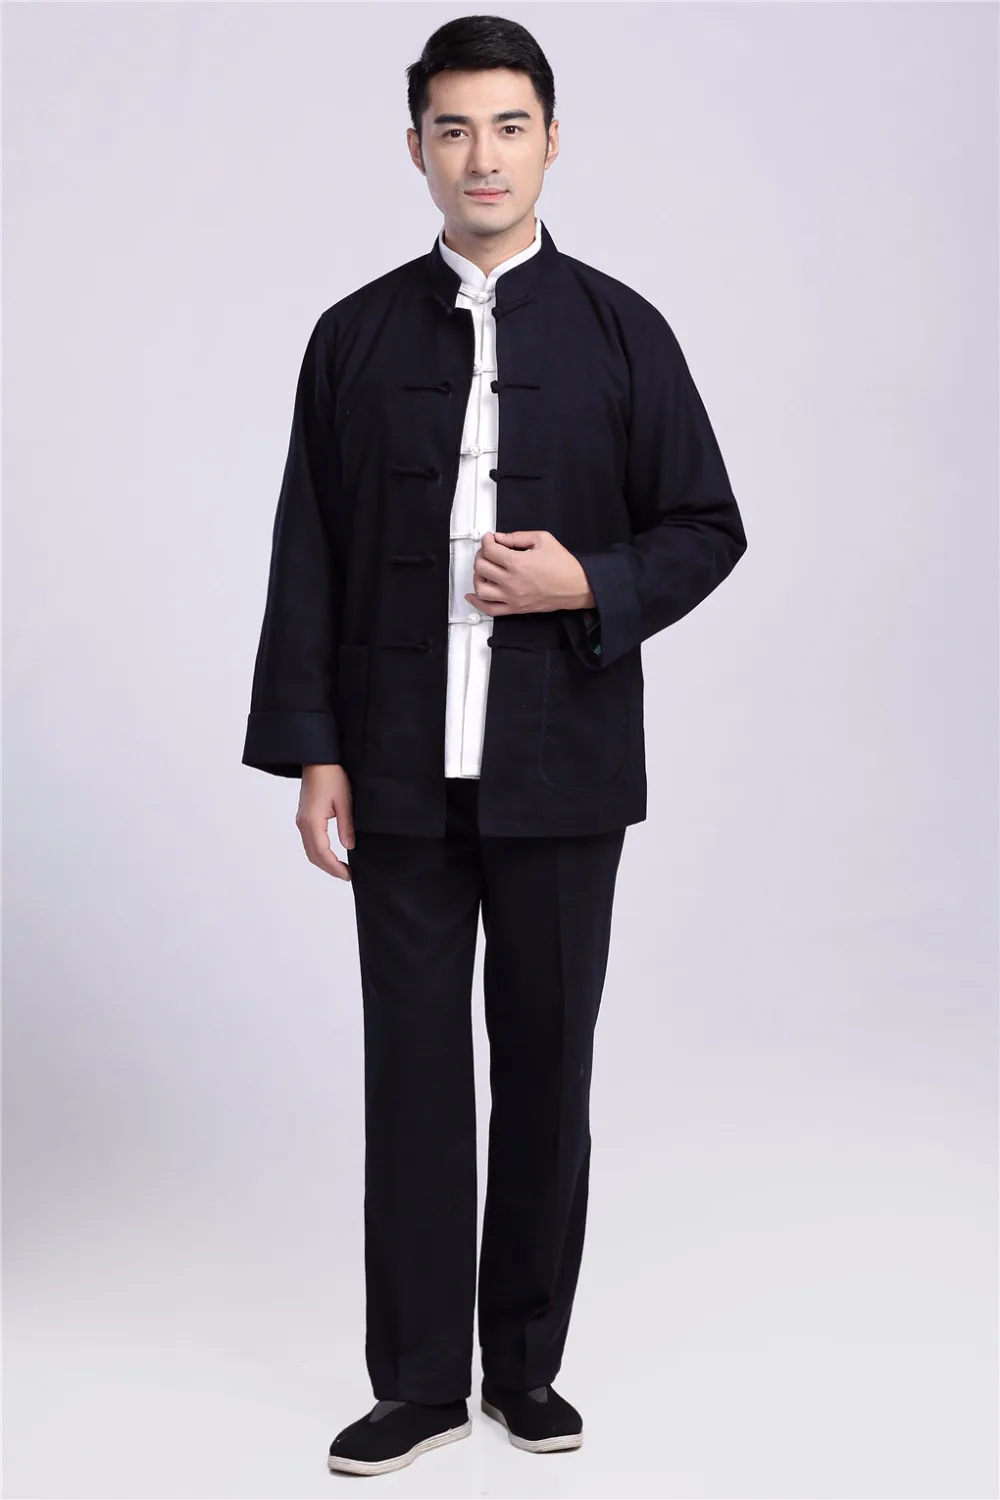 Фото Шанхайская история Зимняя шерстяная рубашка и брюки кунг-фу - купить